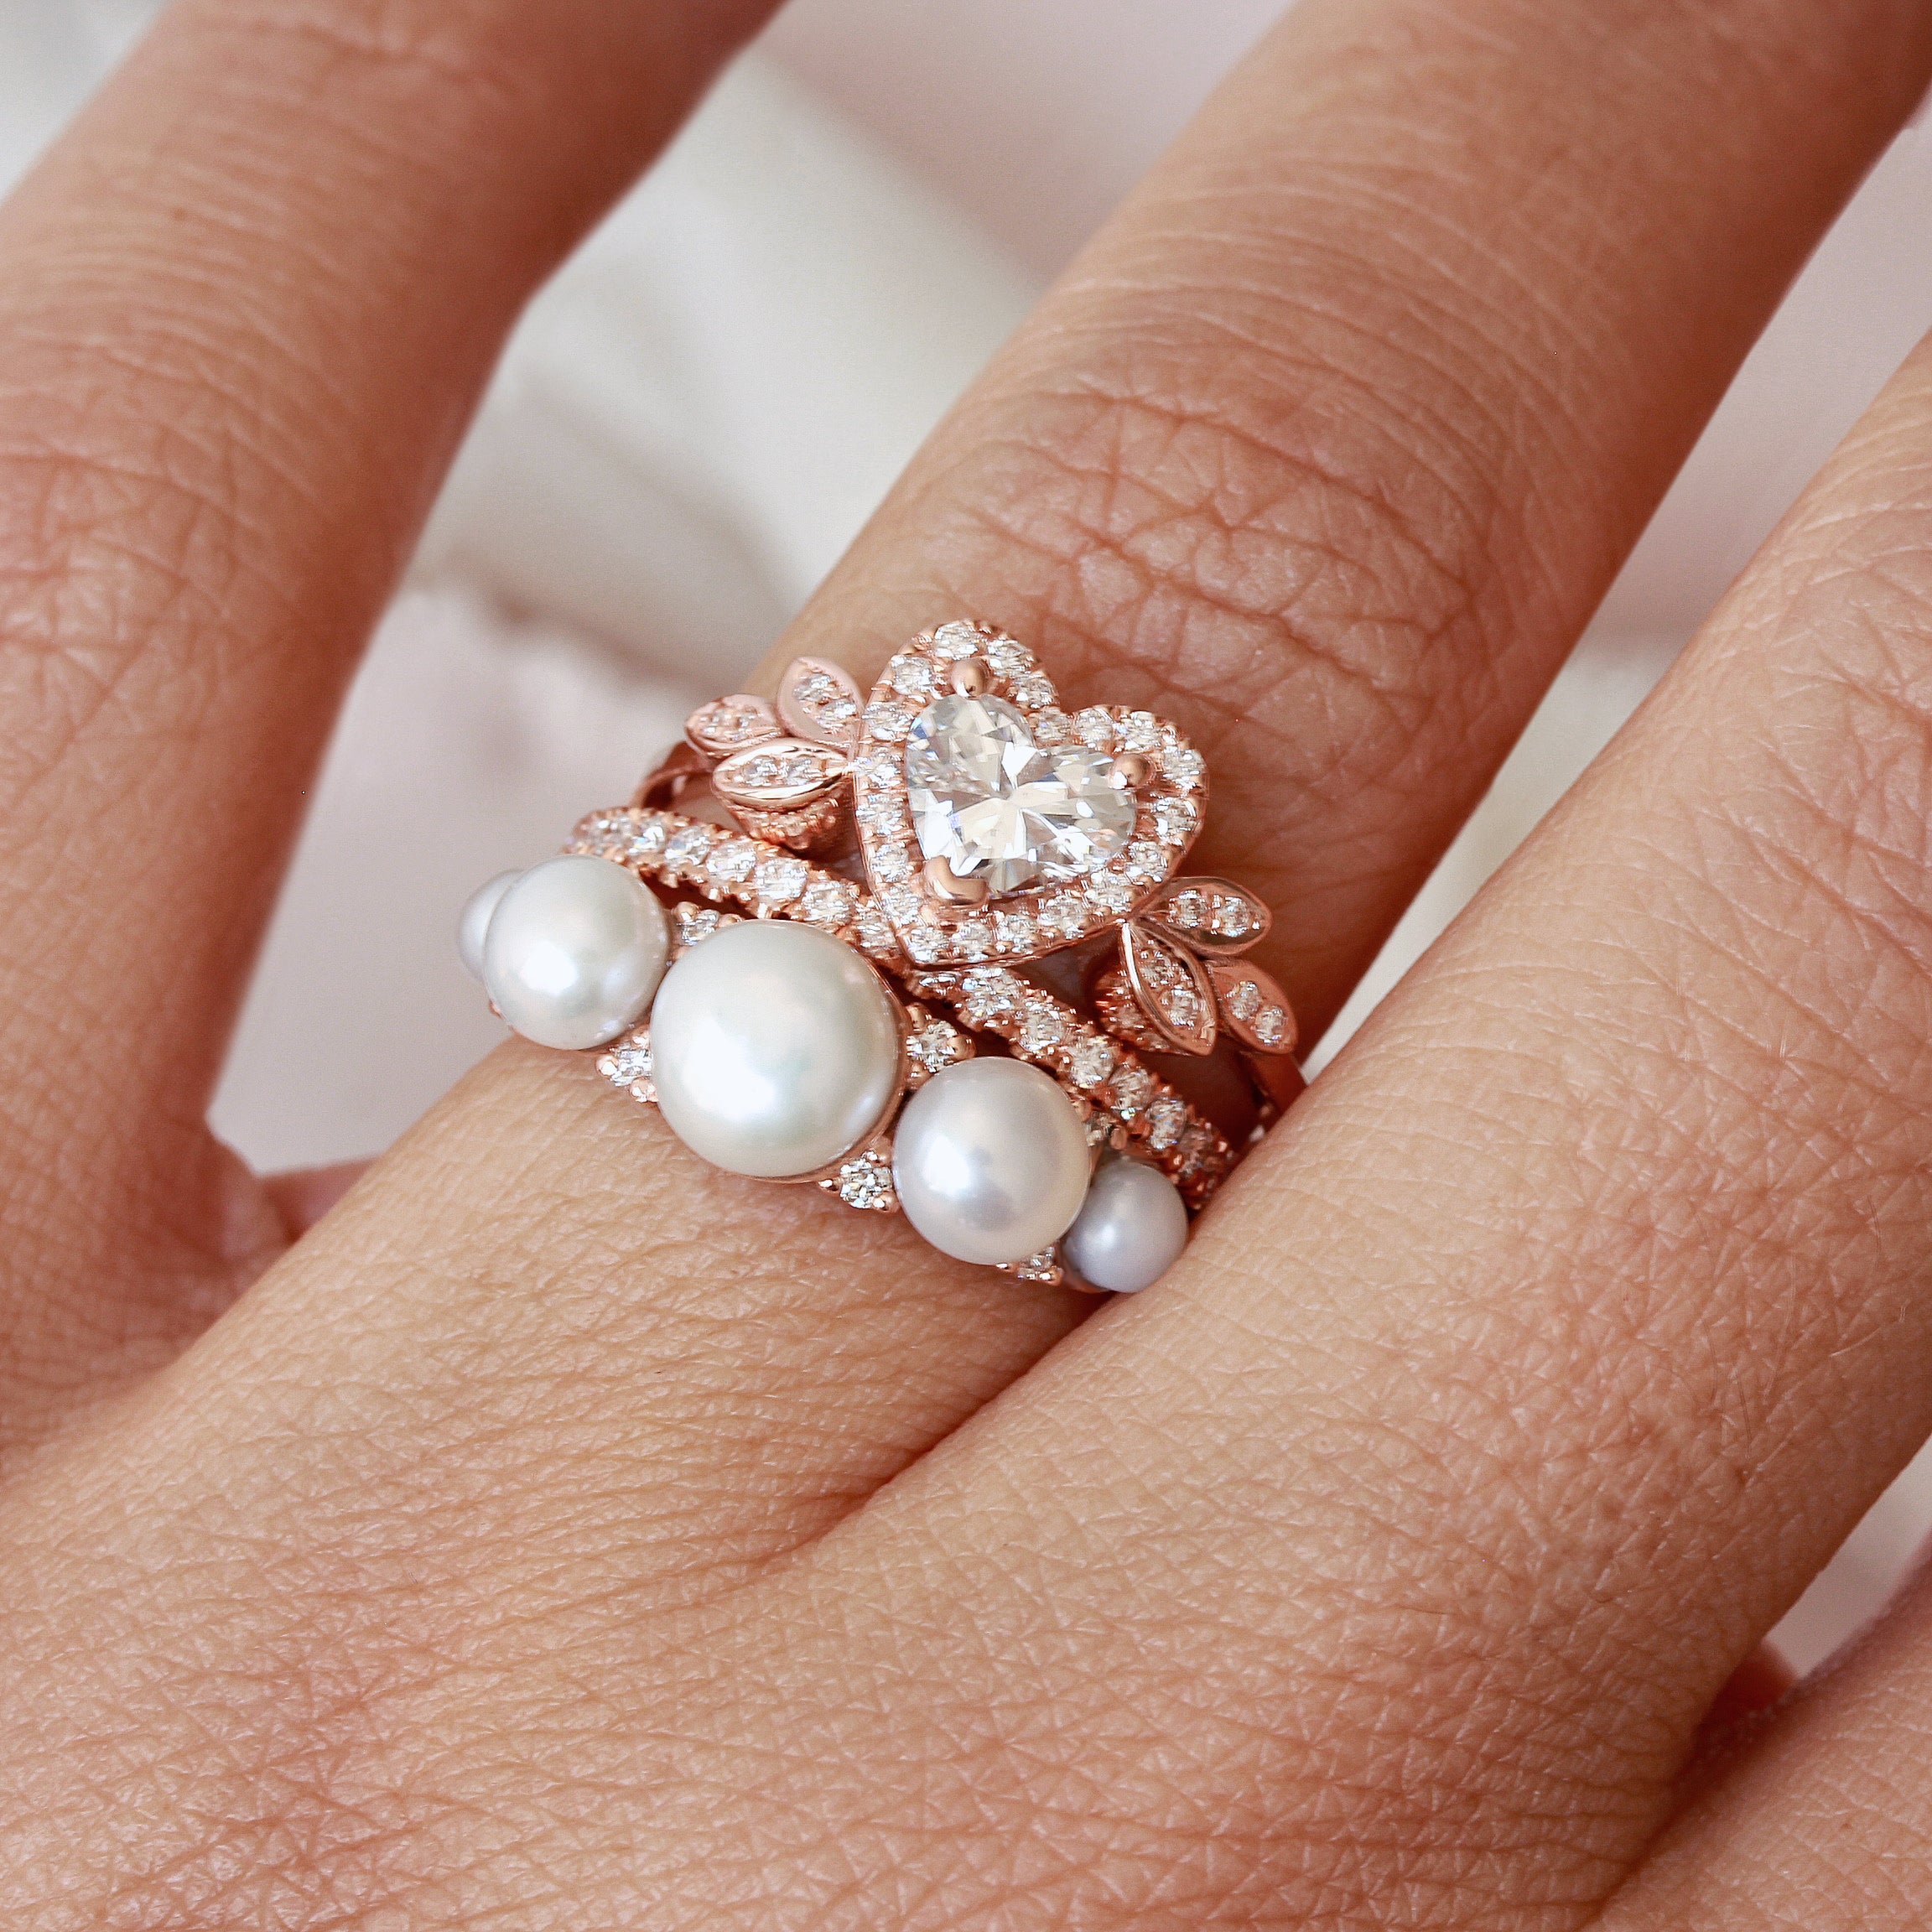 WOXINDA 2 In 1 Womens Vintage Black Ring Diamond Engagement Wedding Band  Ring Set - Walmart.com